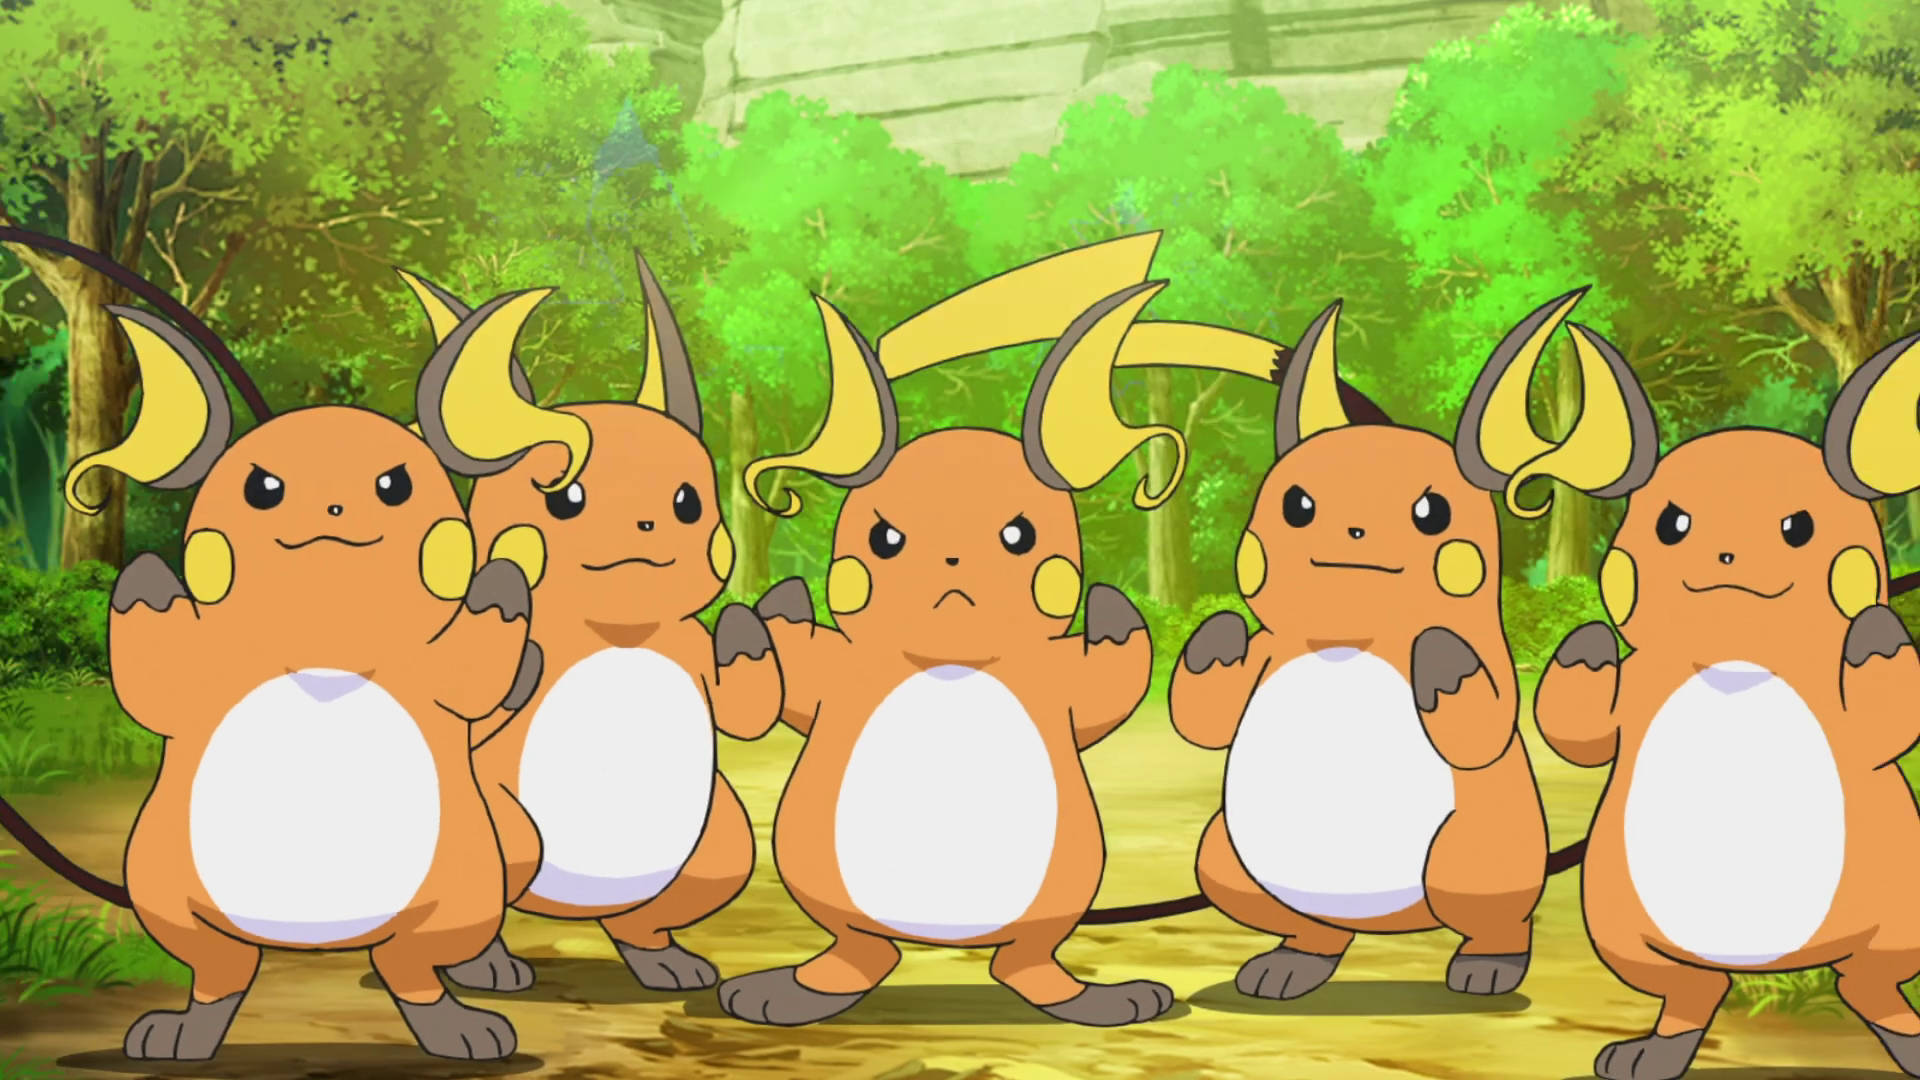 Raichu - Pokémon - Image by Saiyoukaxx #650530 - Zerochan Anime Image Board